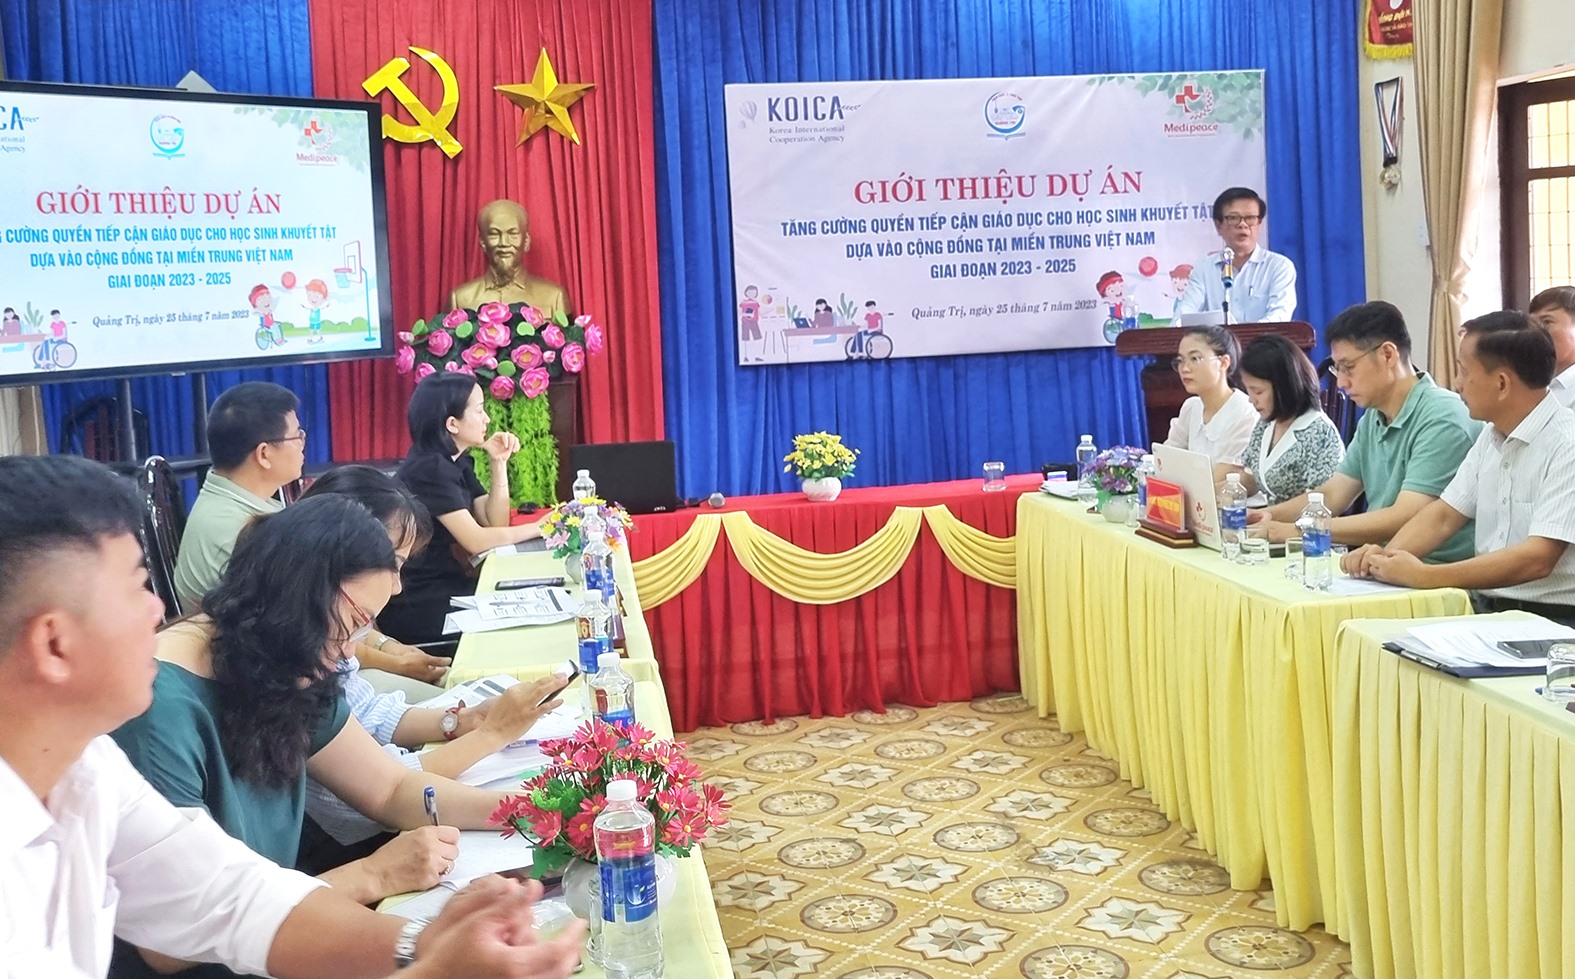 Phó Giám đốc Sở GD&ĐT Quảng Trị Phan Hữu Huyện phát biểu tại buổi giới thiệu dự án -Ảnh: Tú Linh